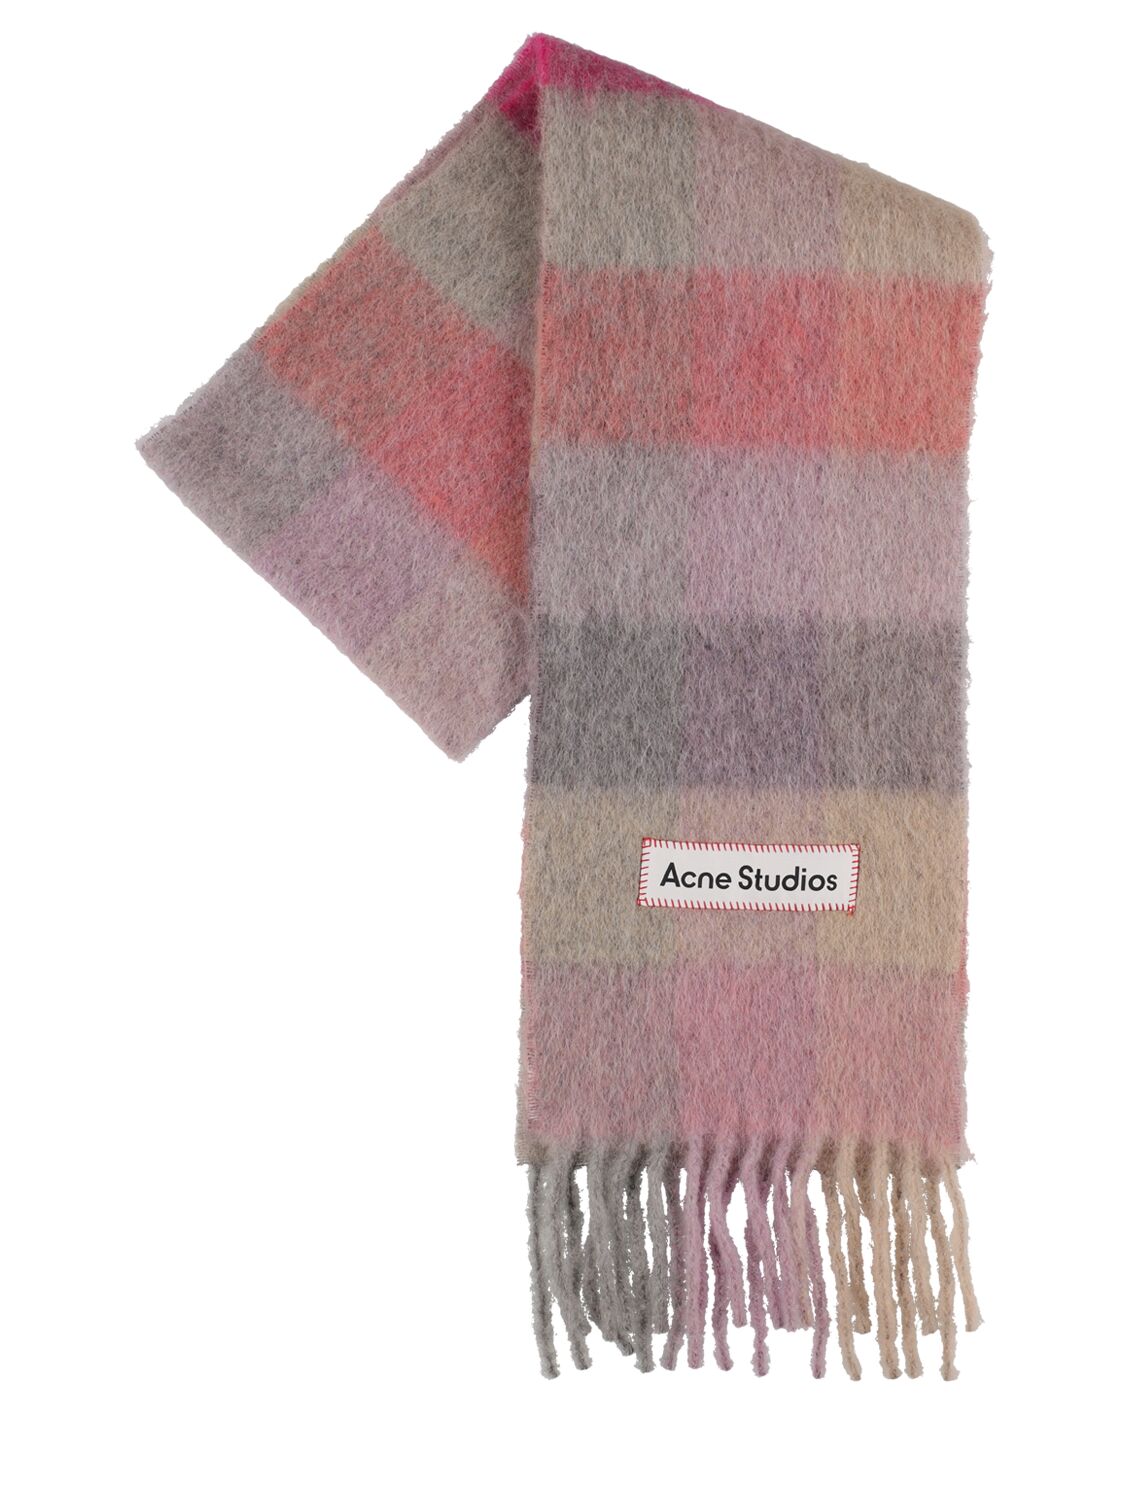 Acne Studios Schal Aus Wolle, Alpaka Und Mohair In Fuchsia,pink